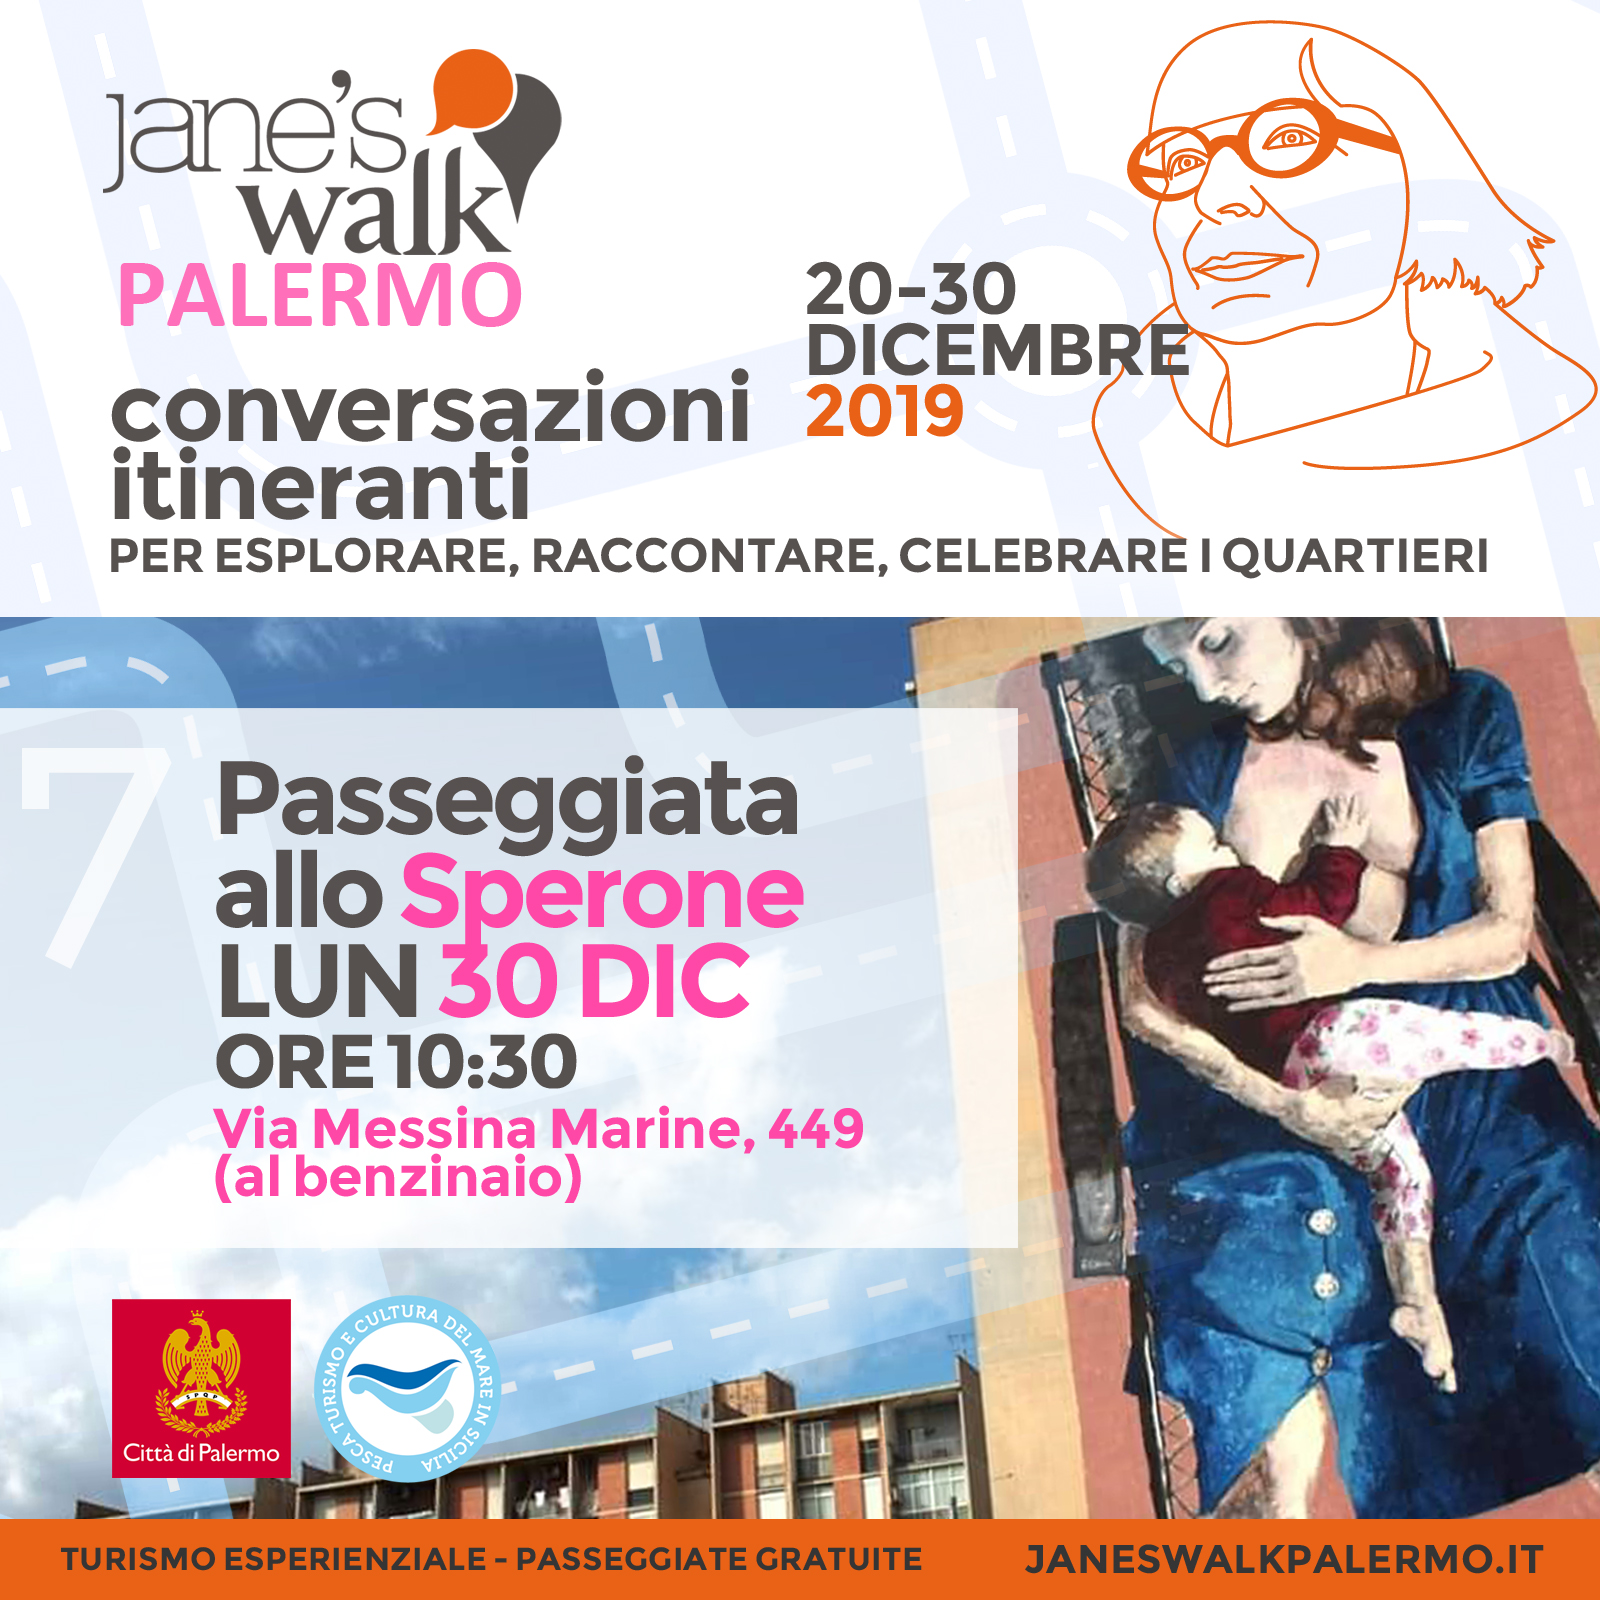 Jane's Walk Palermo - Passeggiata allo Sperone